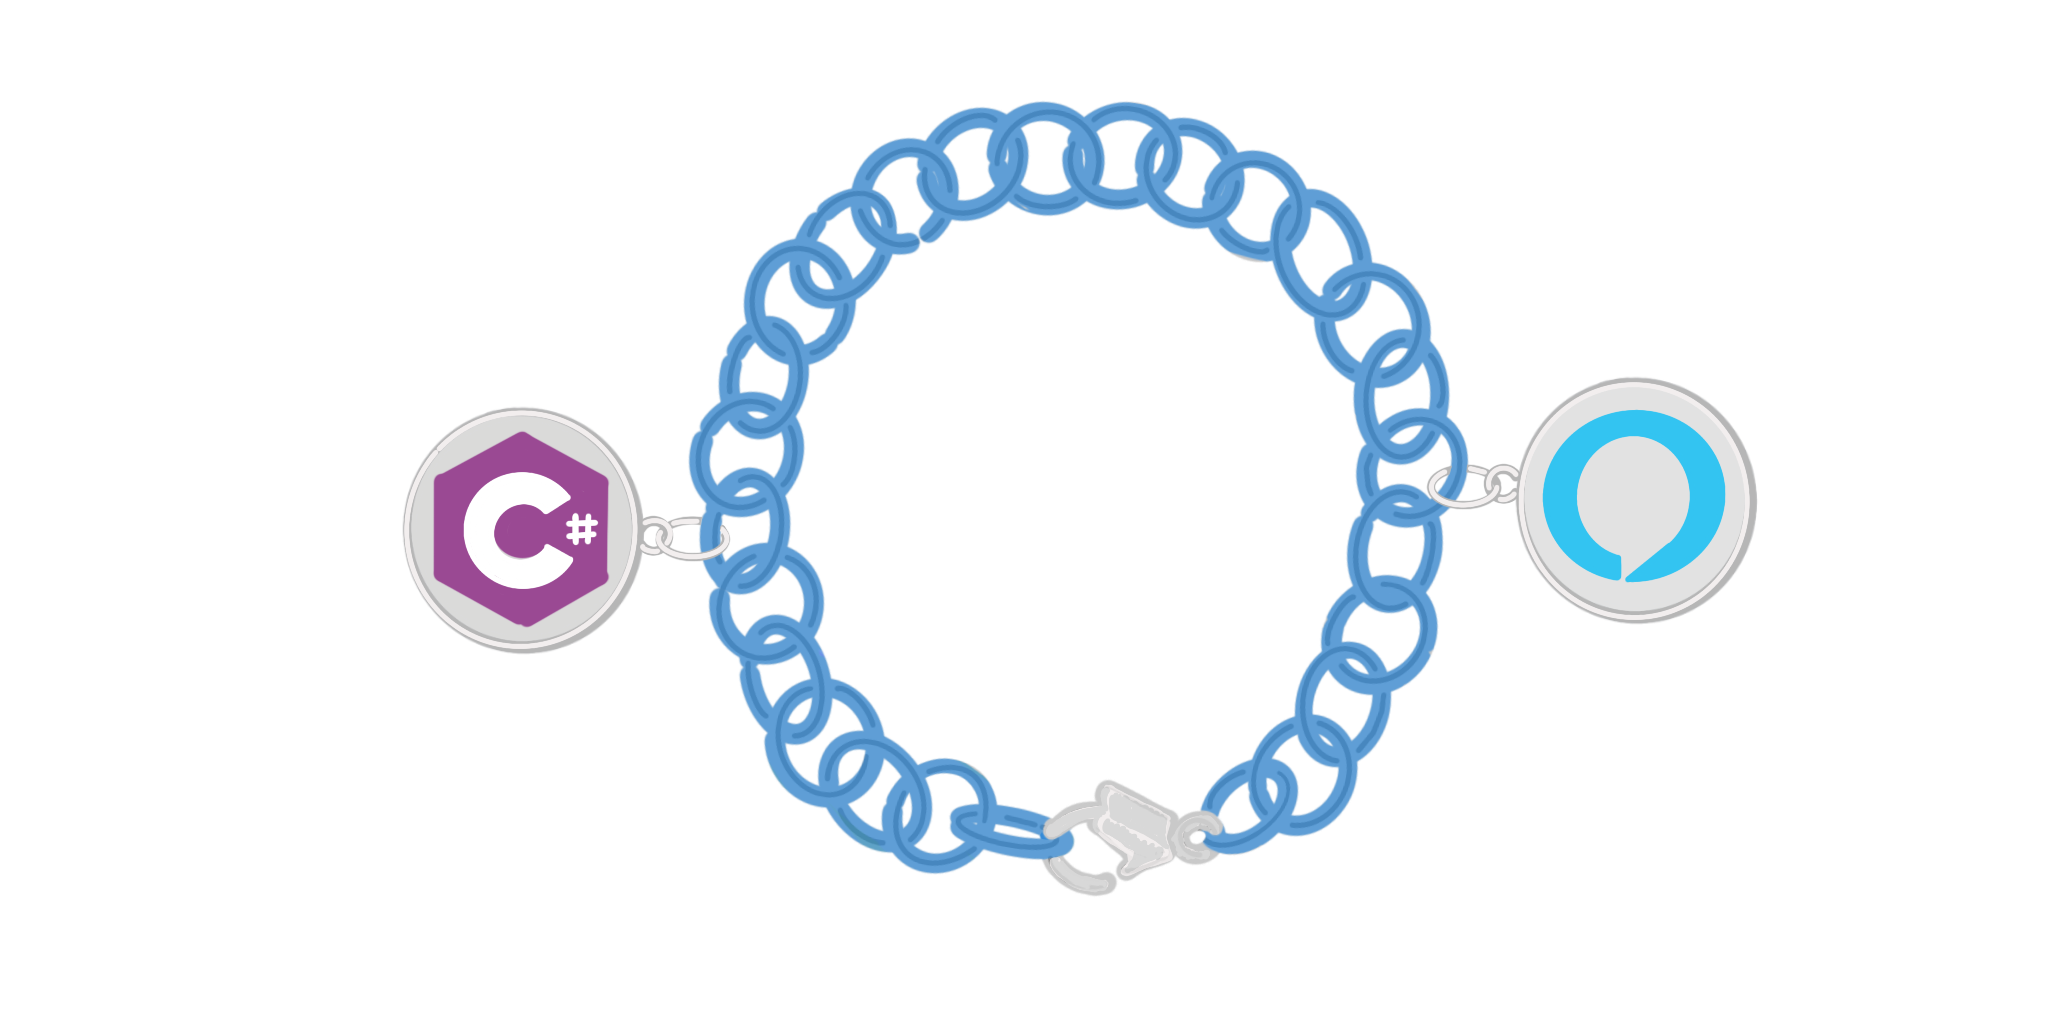 Alexa + C# + Okta Bracelet